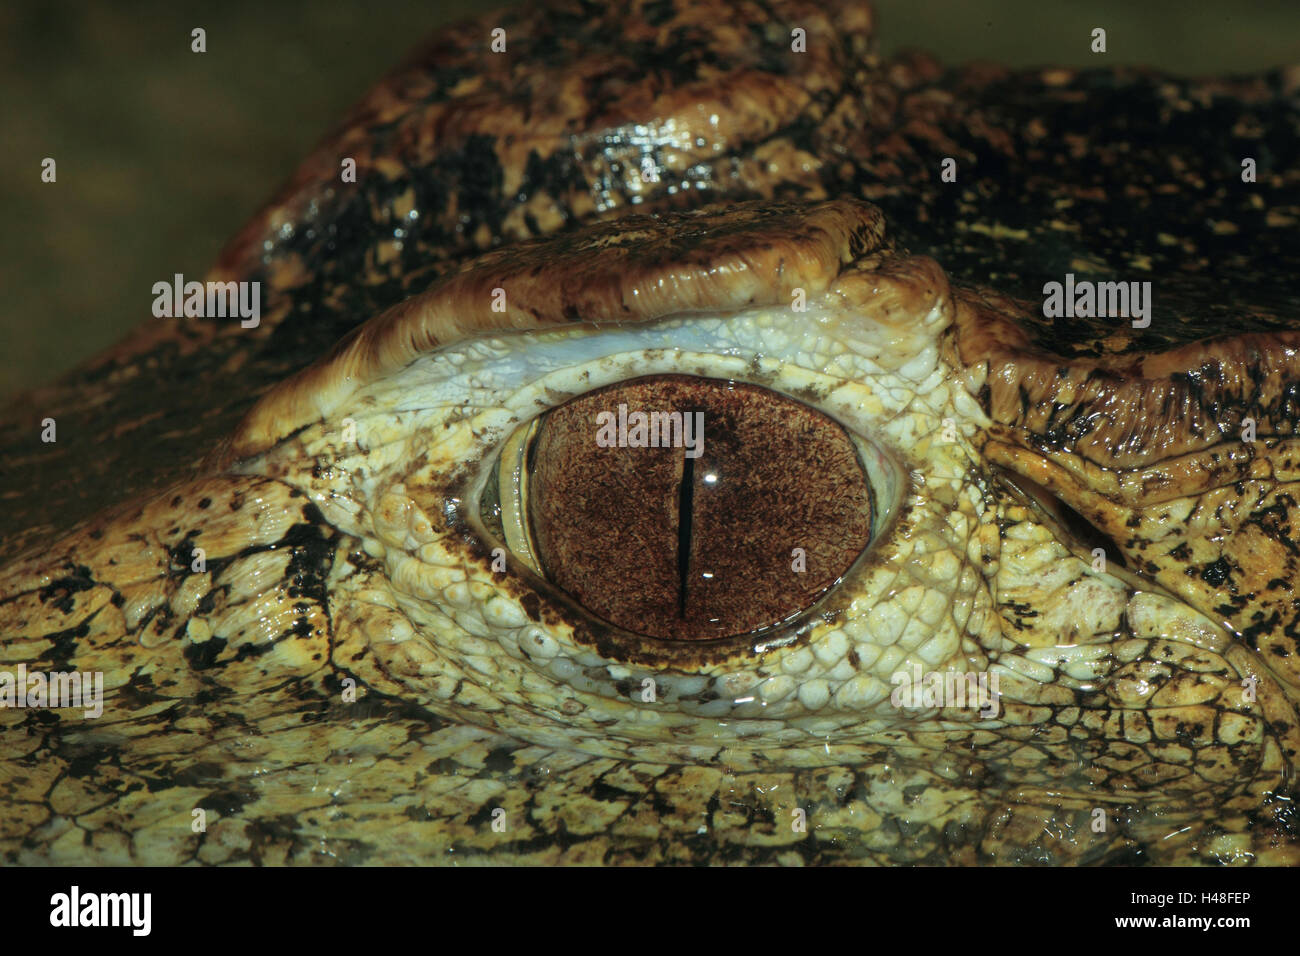 Brauen-glatte Stirn Cayman, Auge, Detail, Querformat, Reptilien, Tier, wildes Tier, Augenbraue Cayman, Krokodil, Cayman, Südamerika, Alligator, mittlere Nahaufnahme Stockfoto